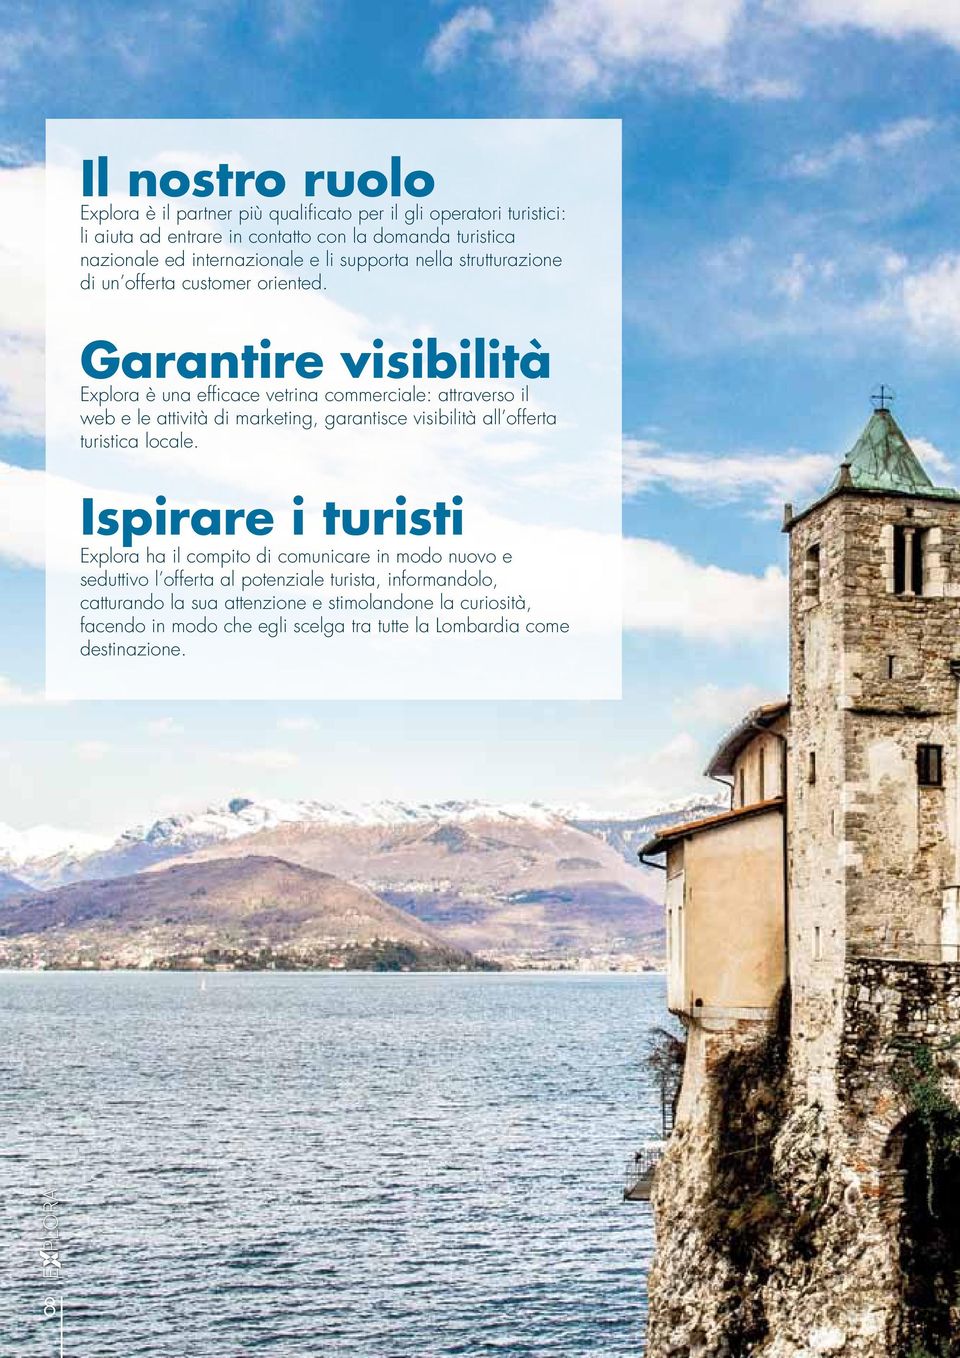 Garantire visibilità Explora è una efficace vetrina commerciale: attraverso il web e le attività di marketing, garantisce visibilità all offerta turistica locale.